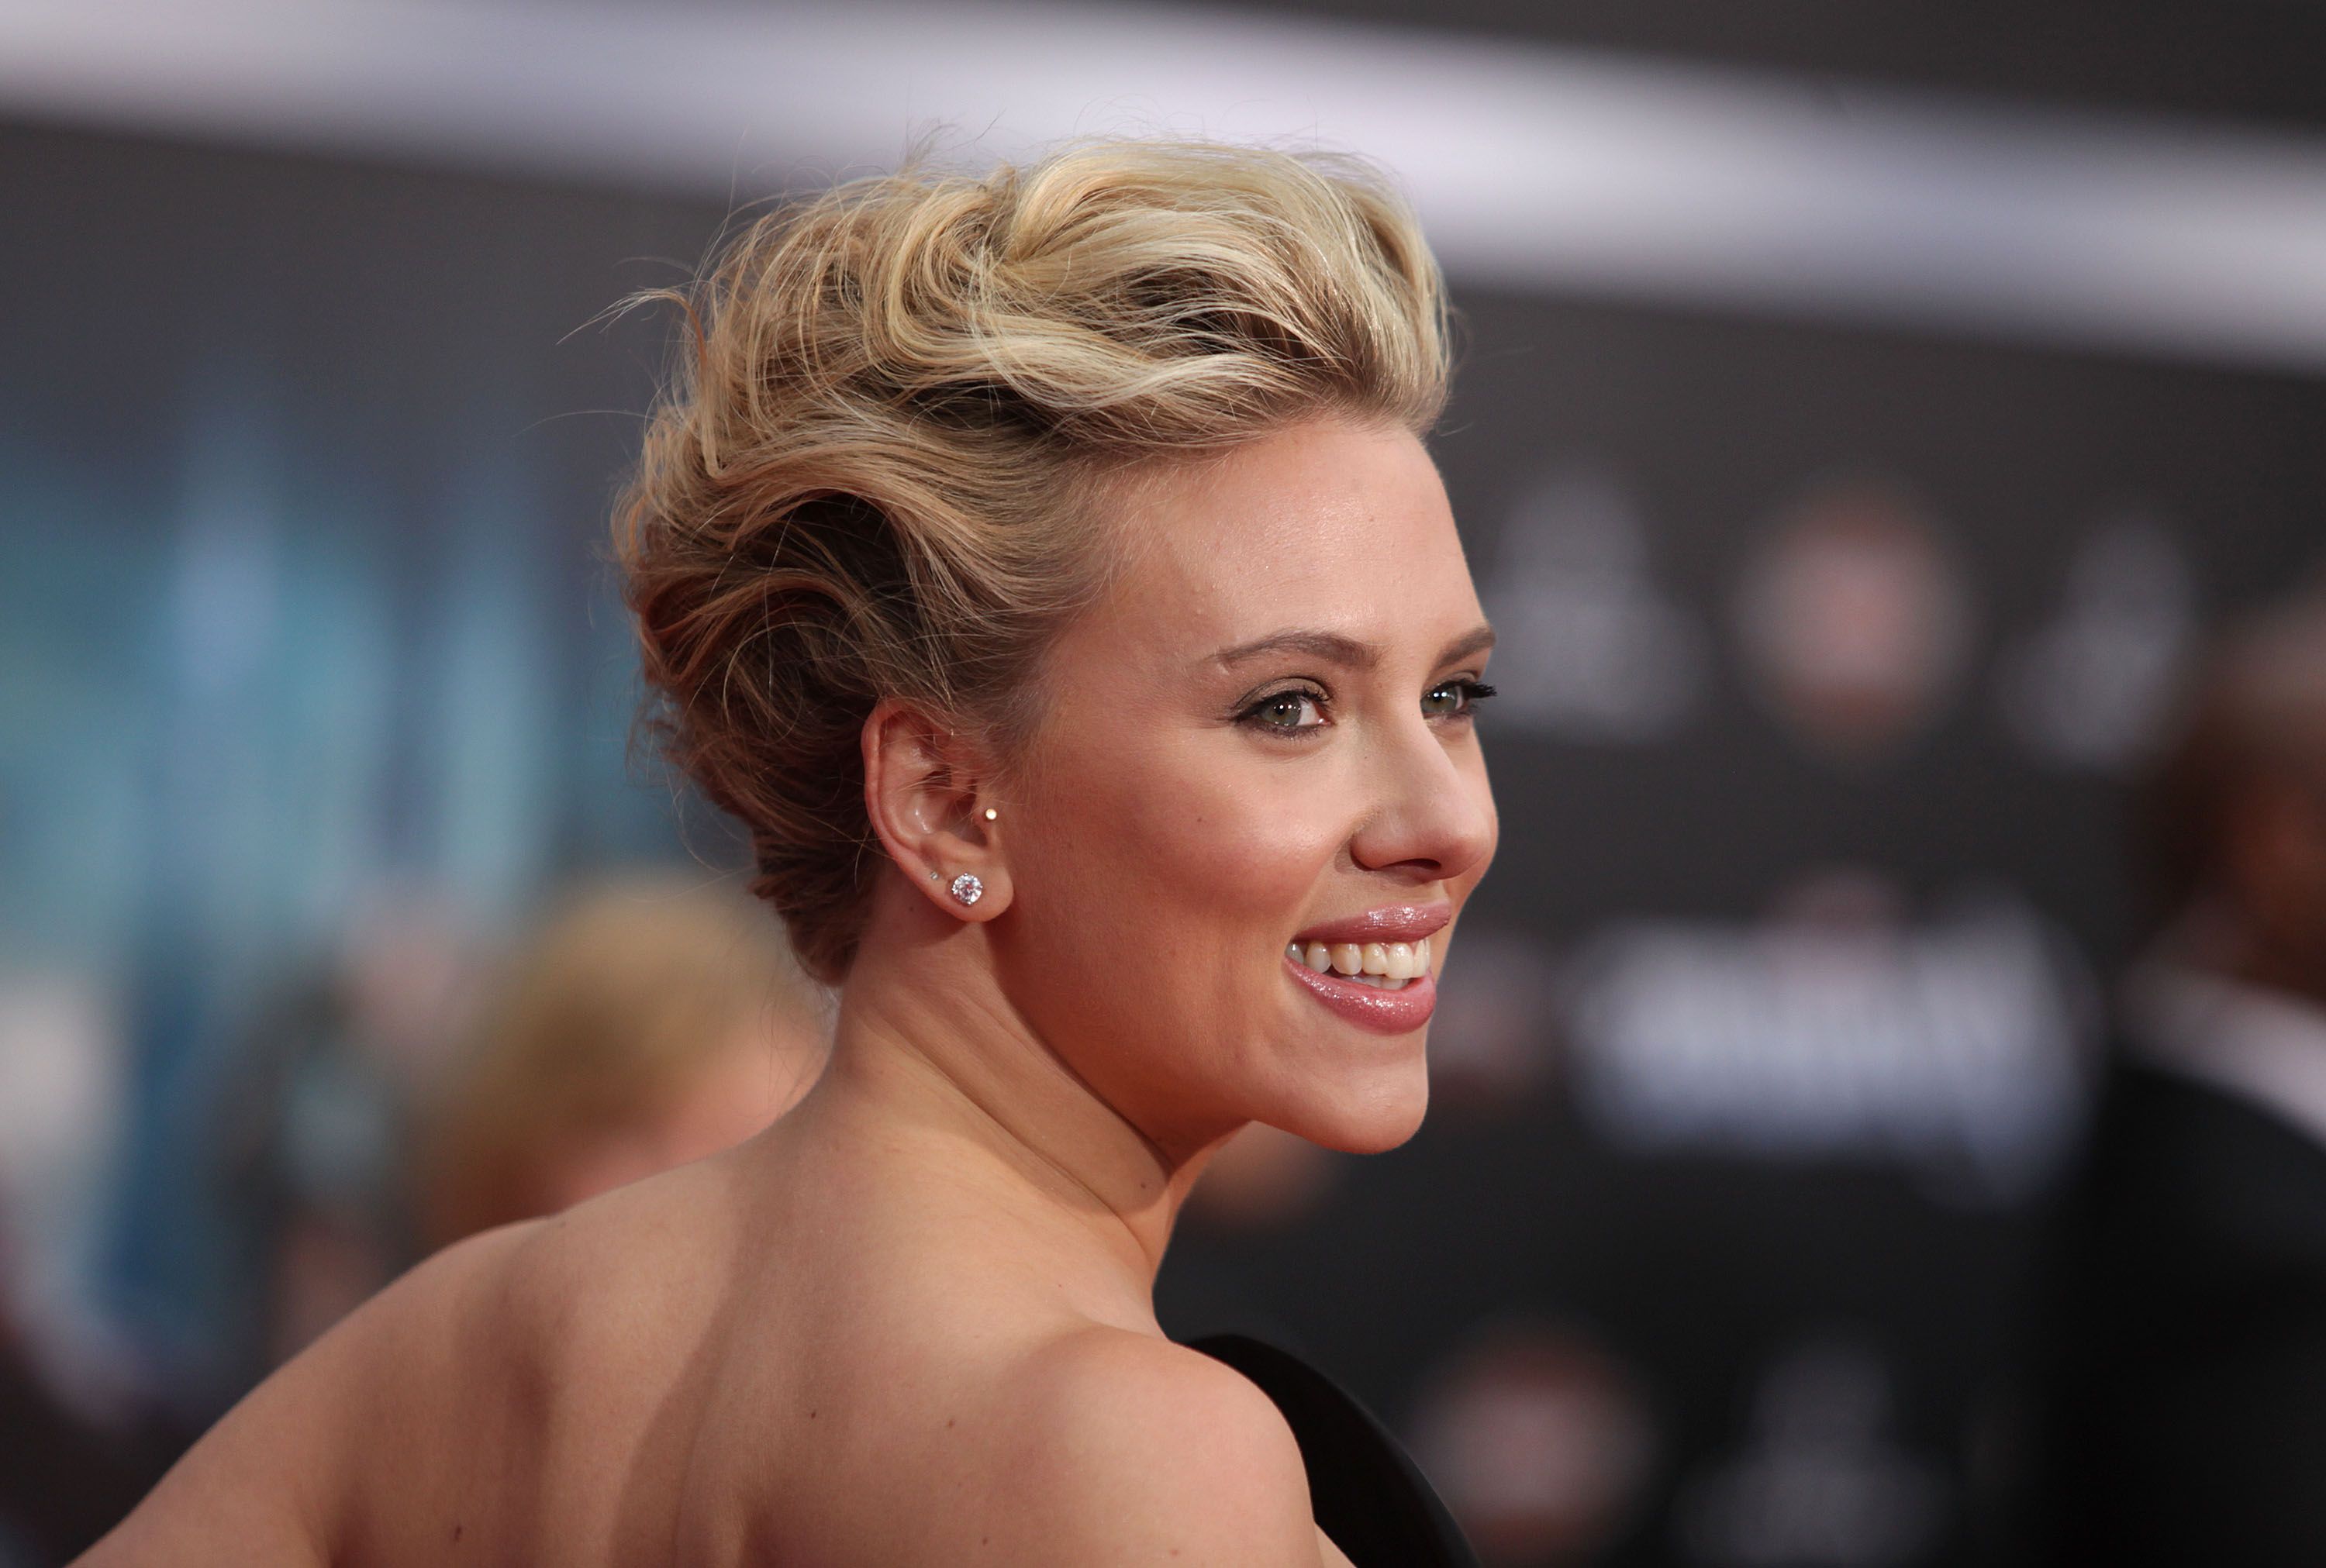 Κάντο όπως οι σταρ: Τα υπέροχα updos της Scarlett Johansson